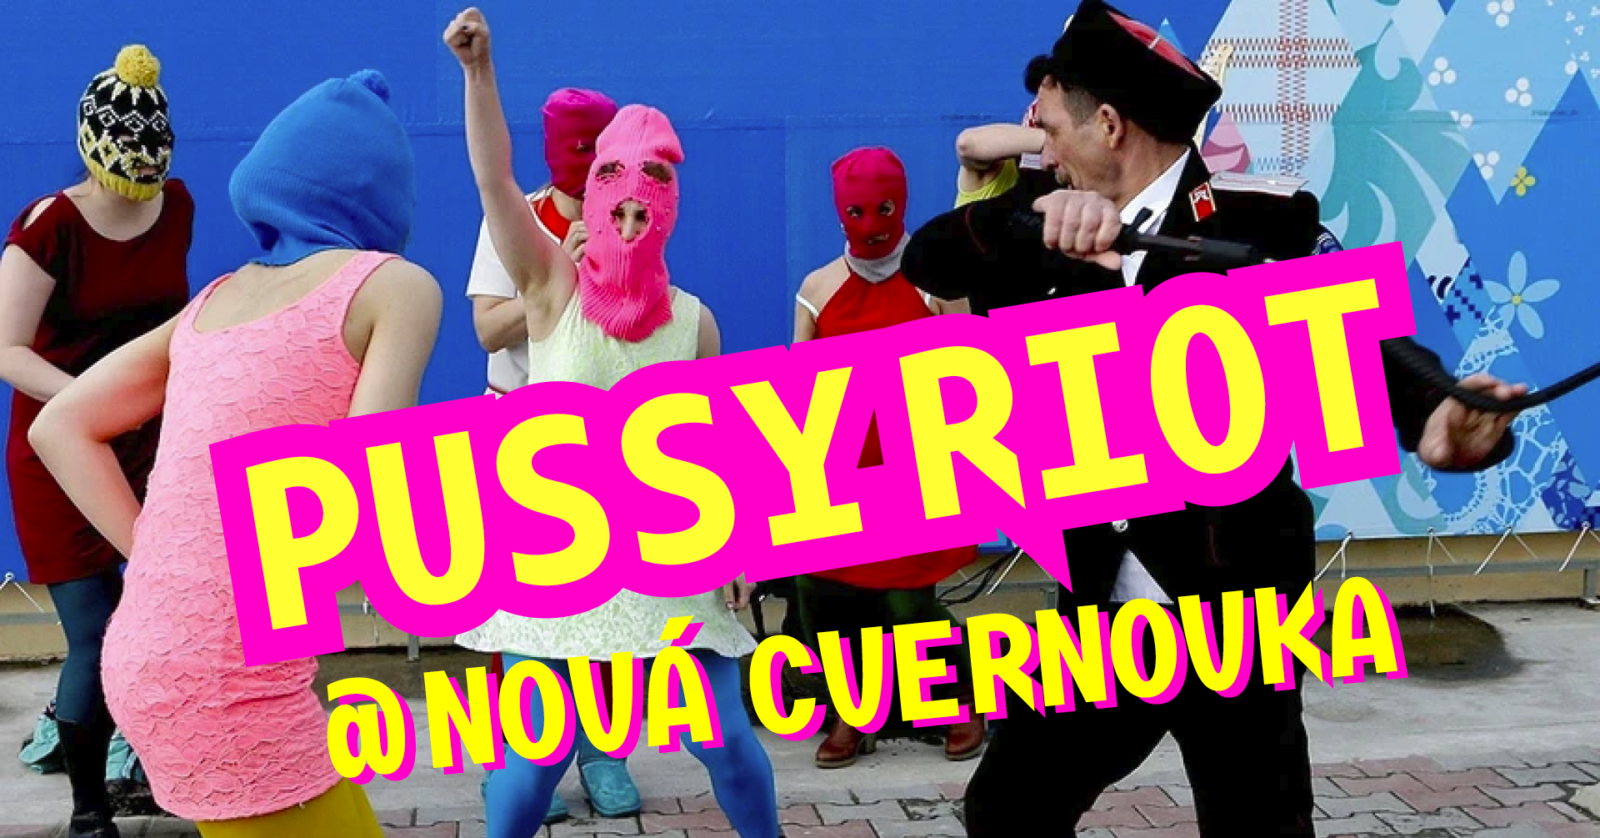 Koncert Pussy Riot v Novel Cvernovke